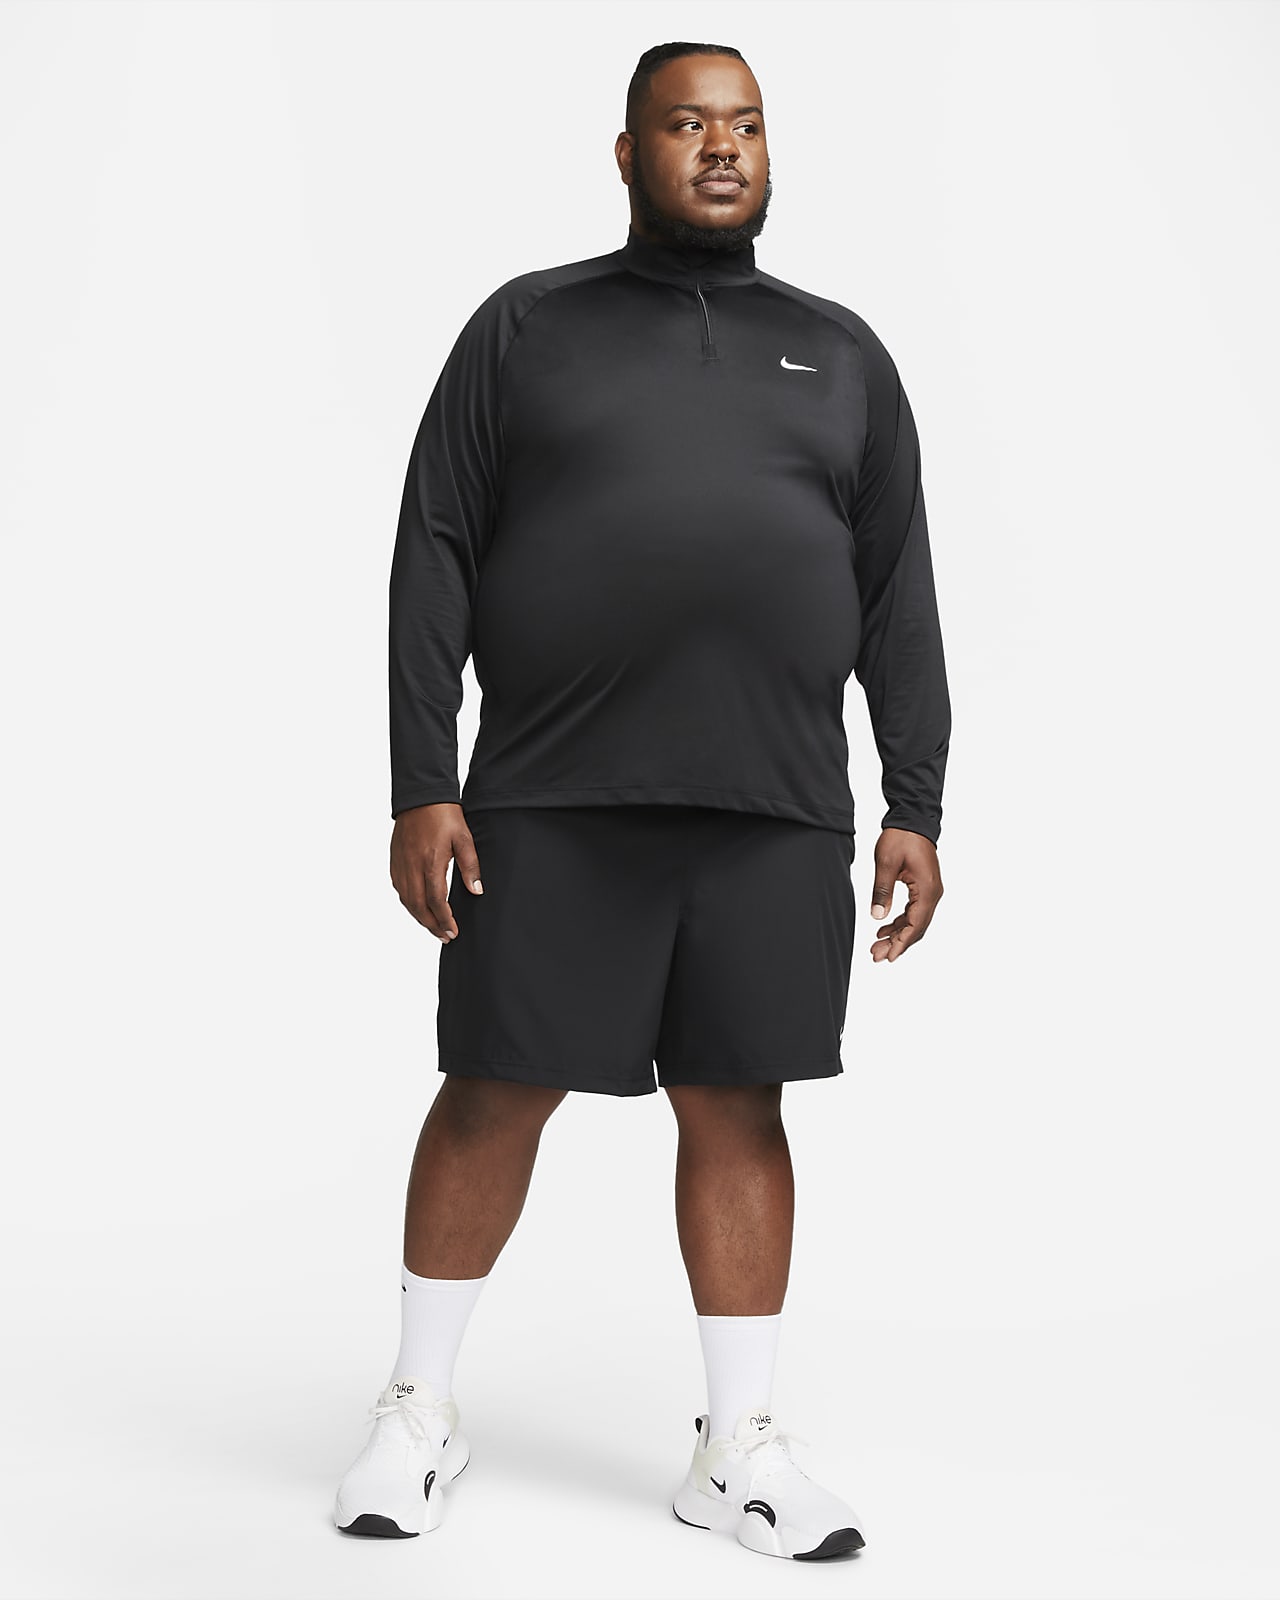 Nike - Dri-Fit 1/4 Zip - Homme — Le coureur nordique